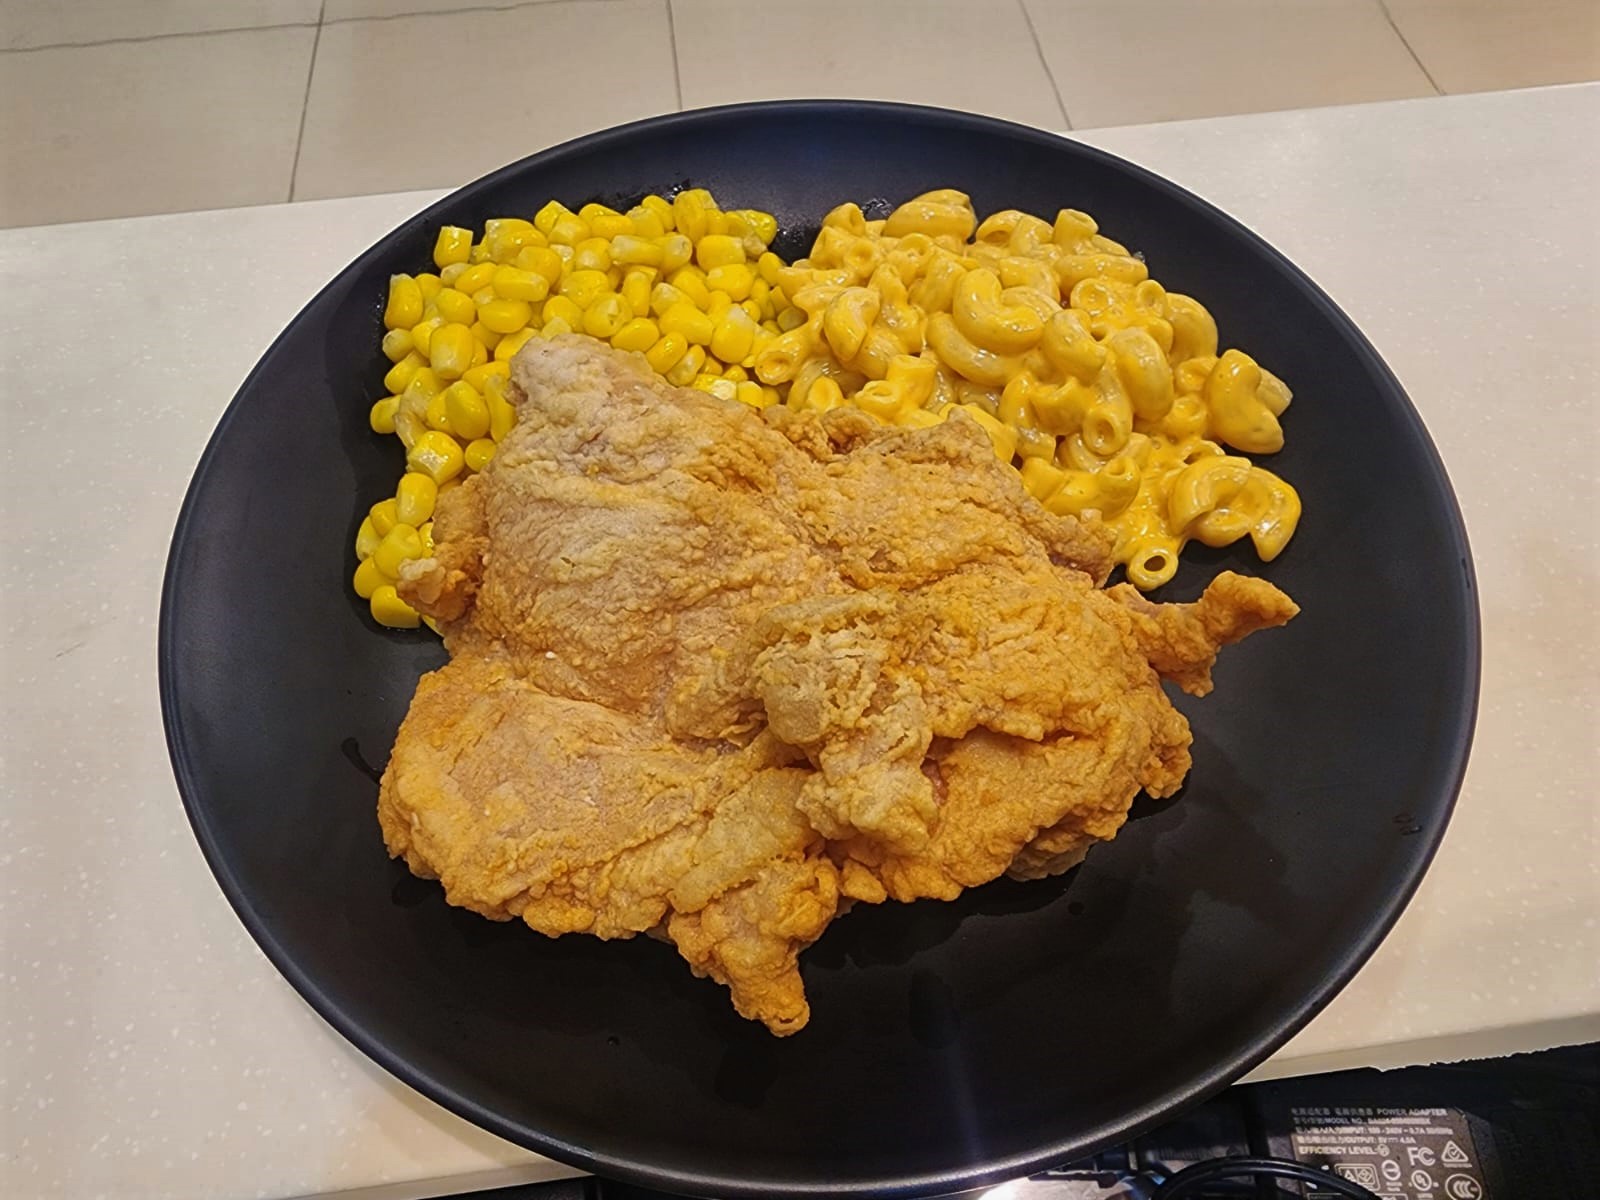 get grilled - fried chicken cutlet